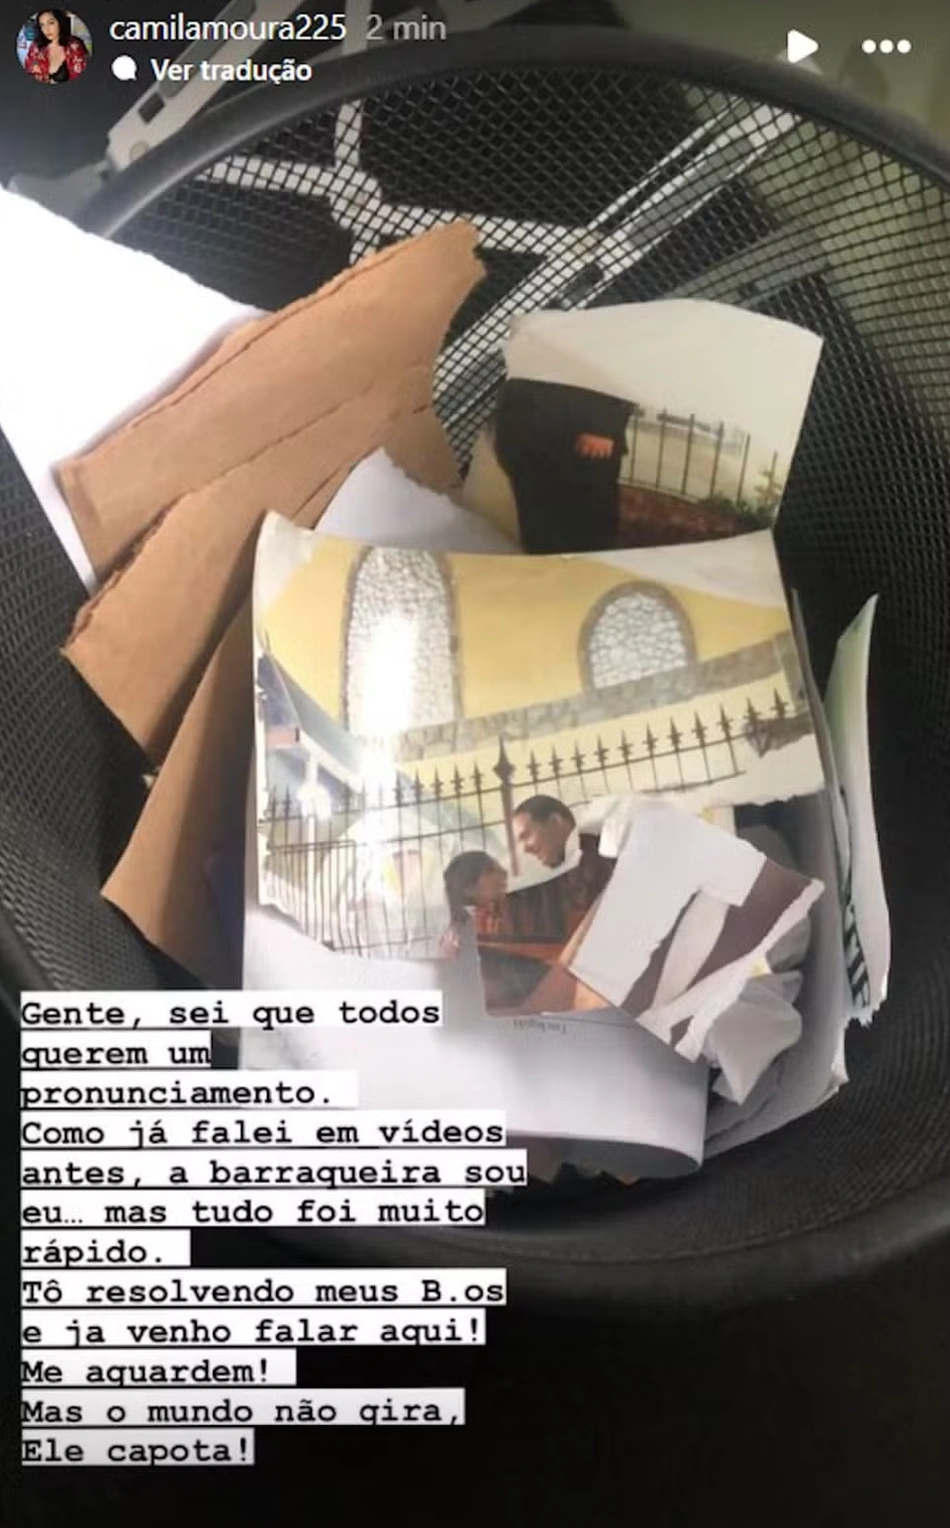 Storie de Camila Moura onde mostra fotos com Lucas no lixo